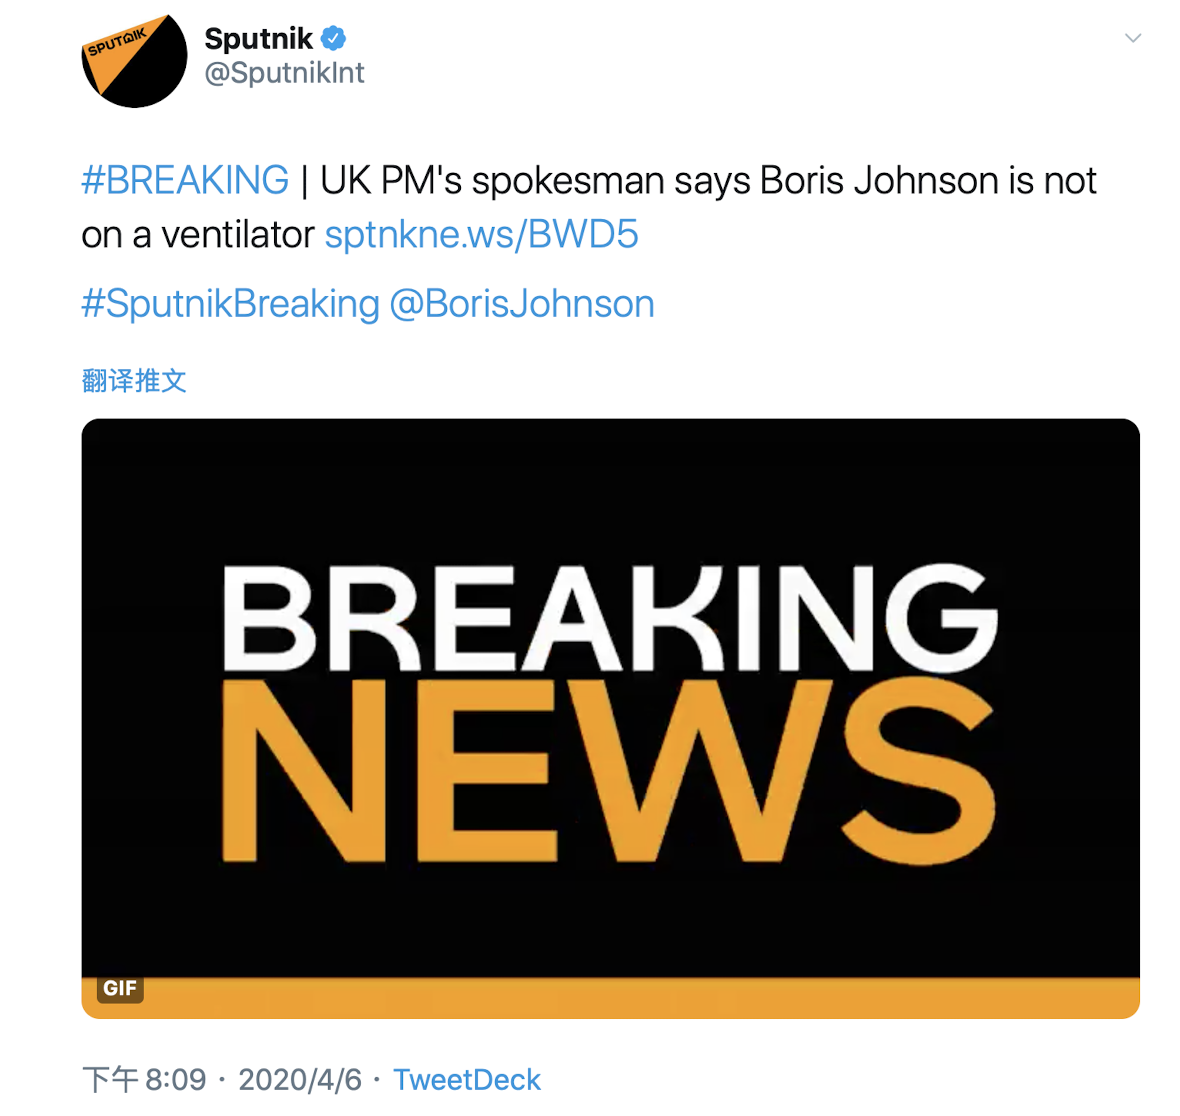 俄媒称英国首相约翰逊进行呼吸机治疗 发言人否认